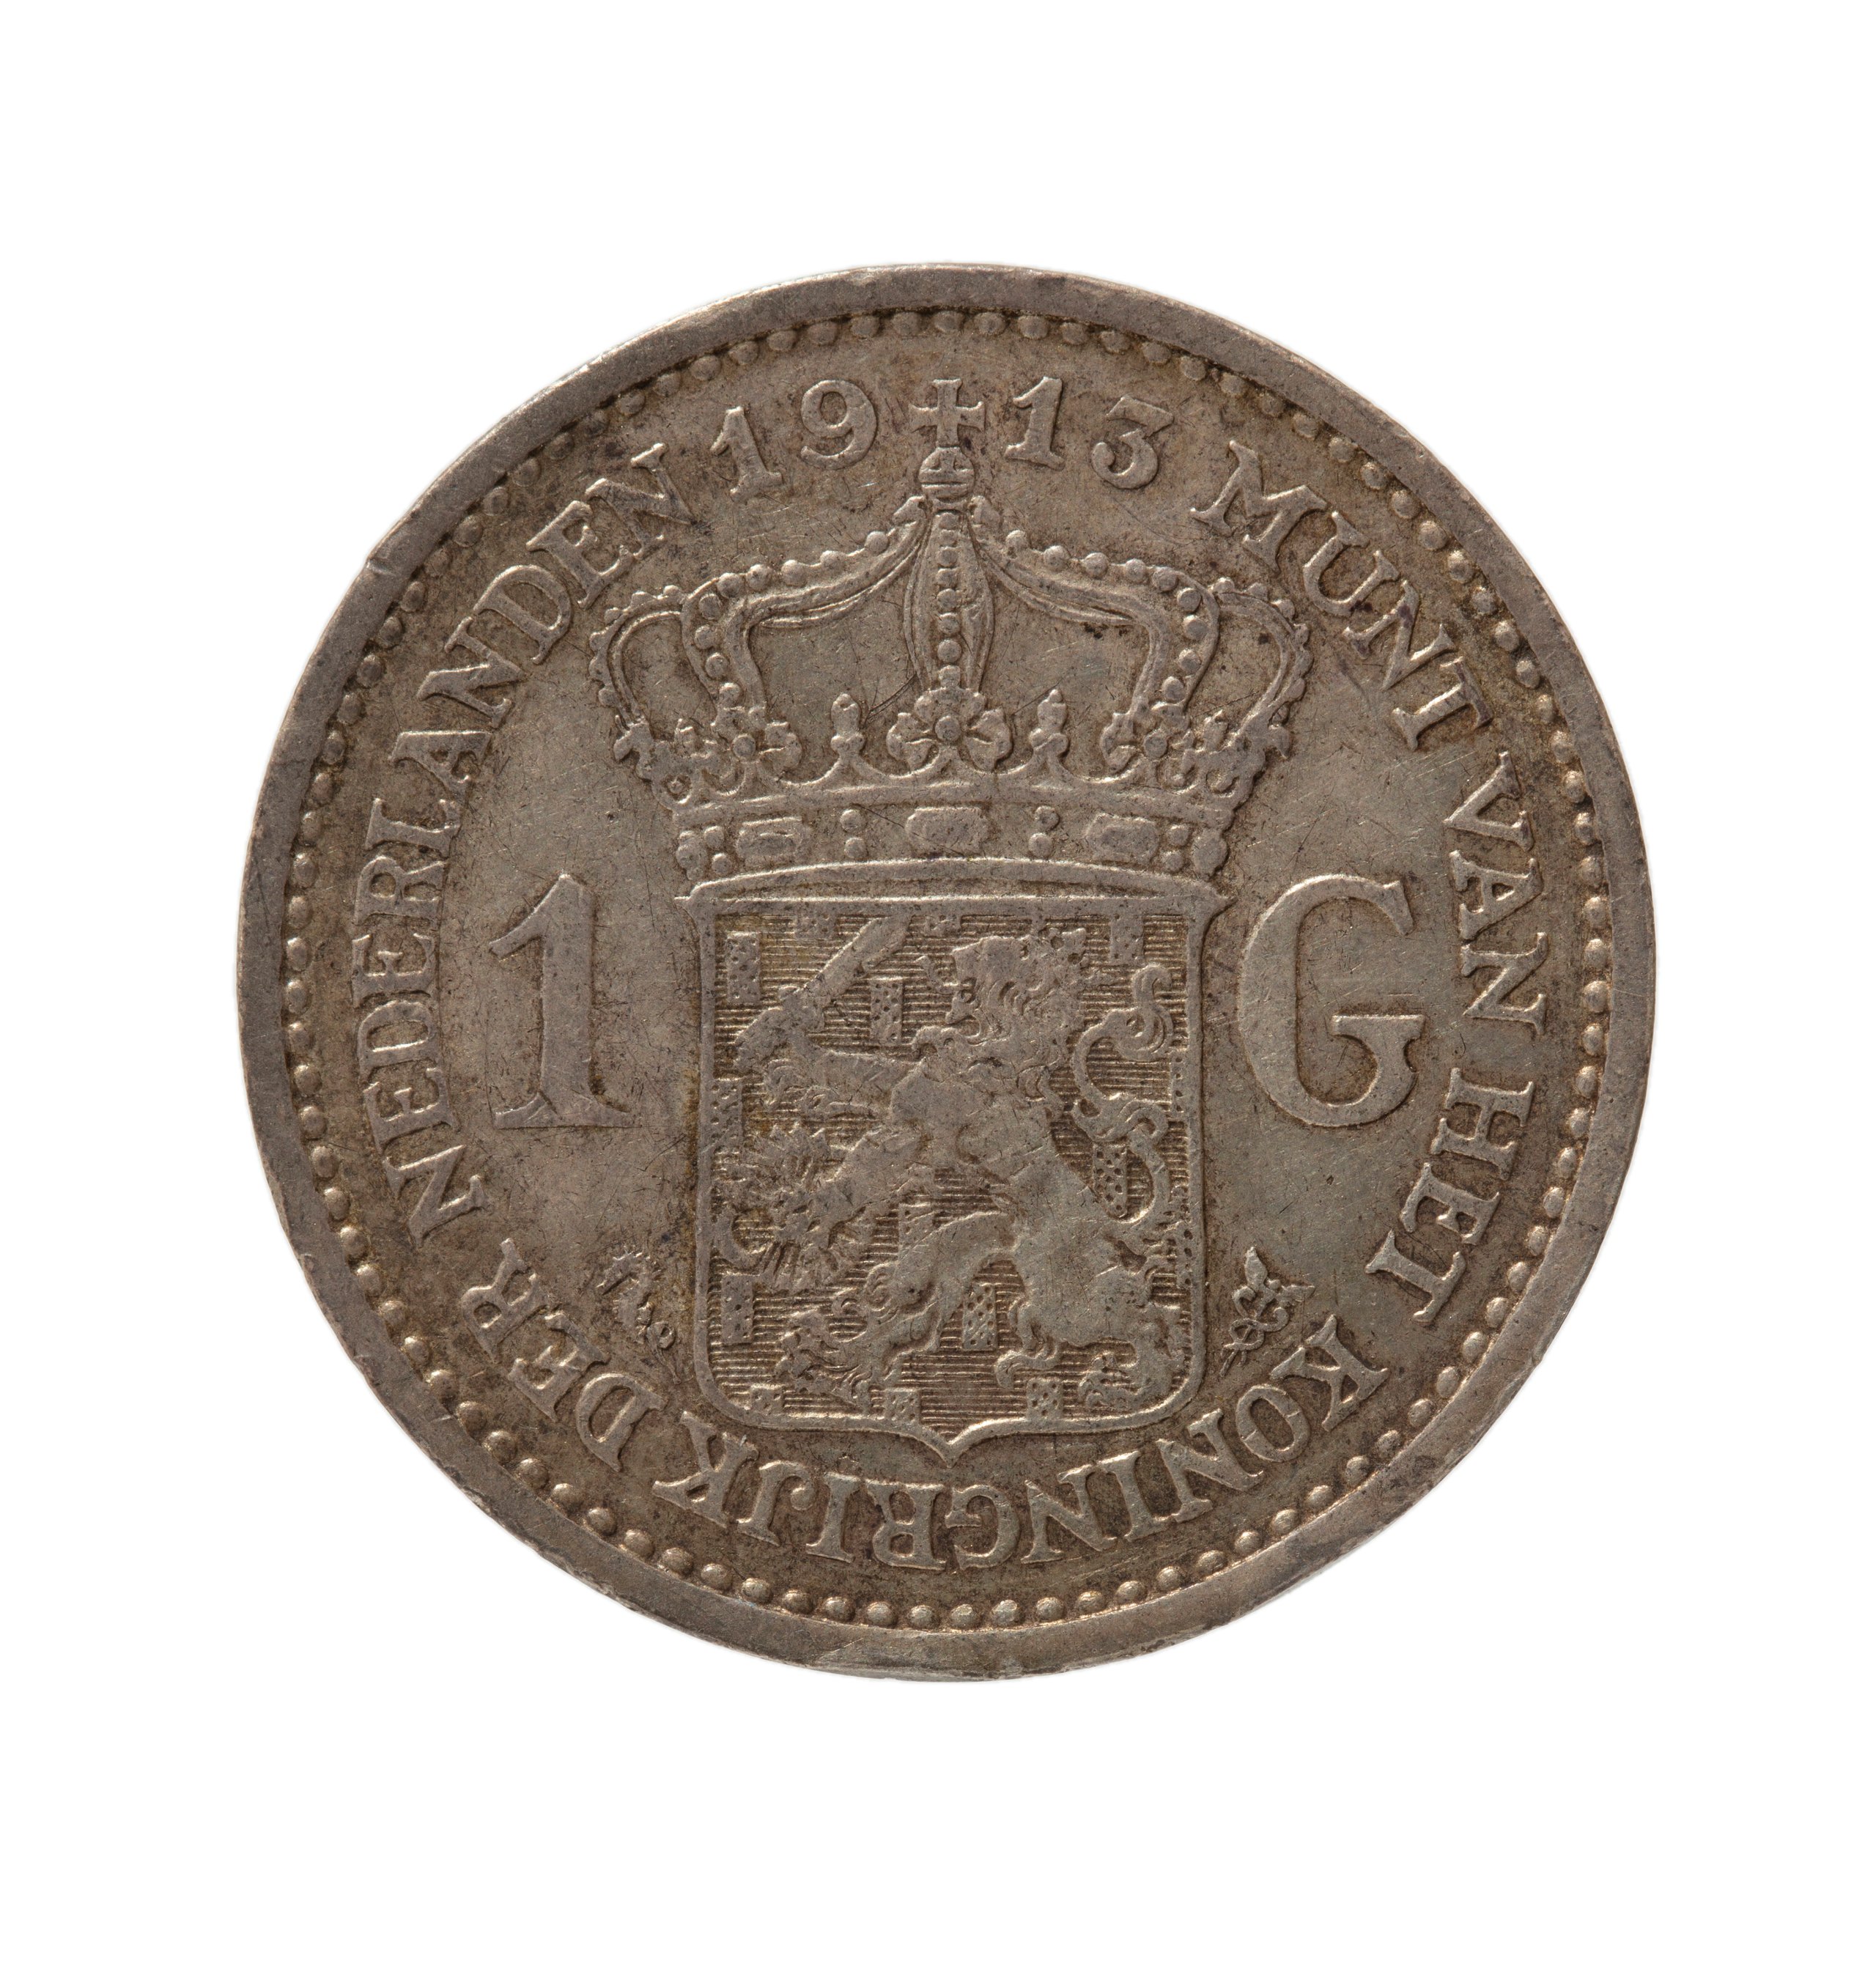 Dutch One Guilder coin